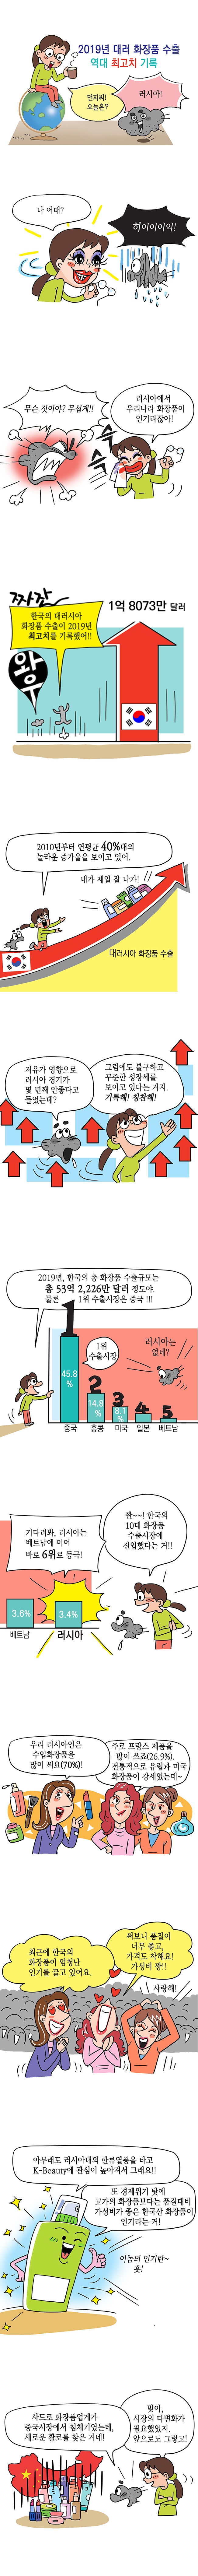 2019년 대러 화장품 수출 역대 최고치 기록 사진1